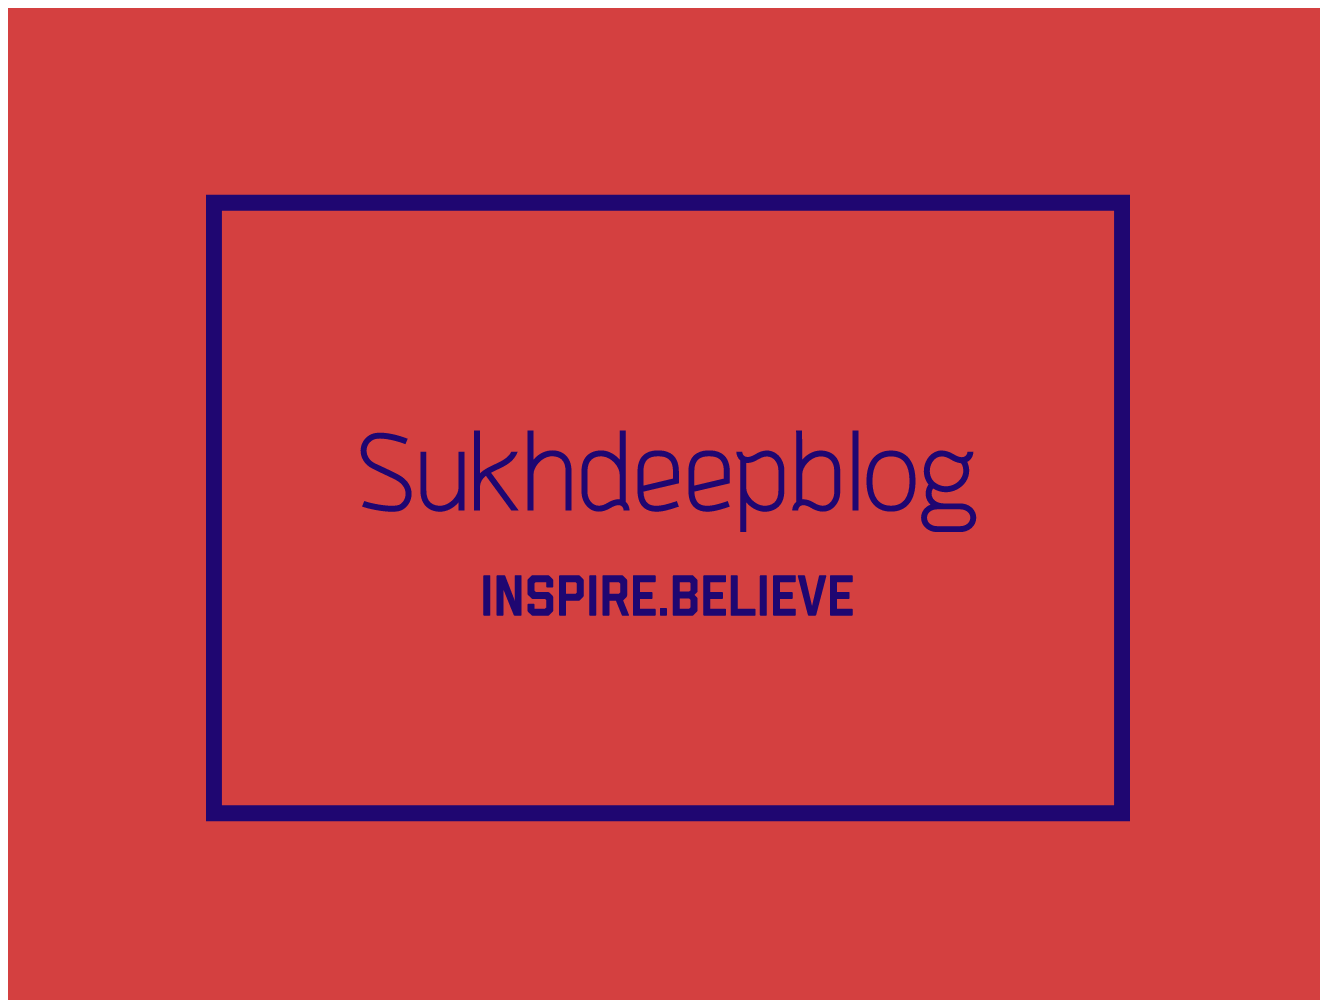 SukhdeepBlogs